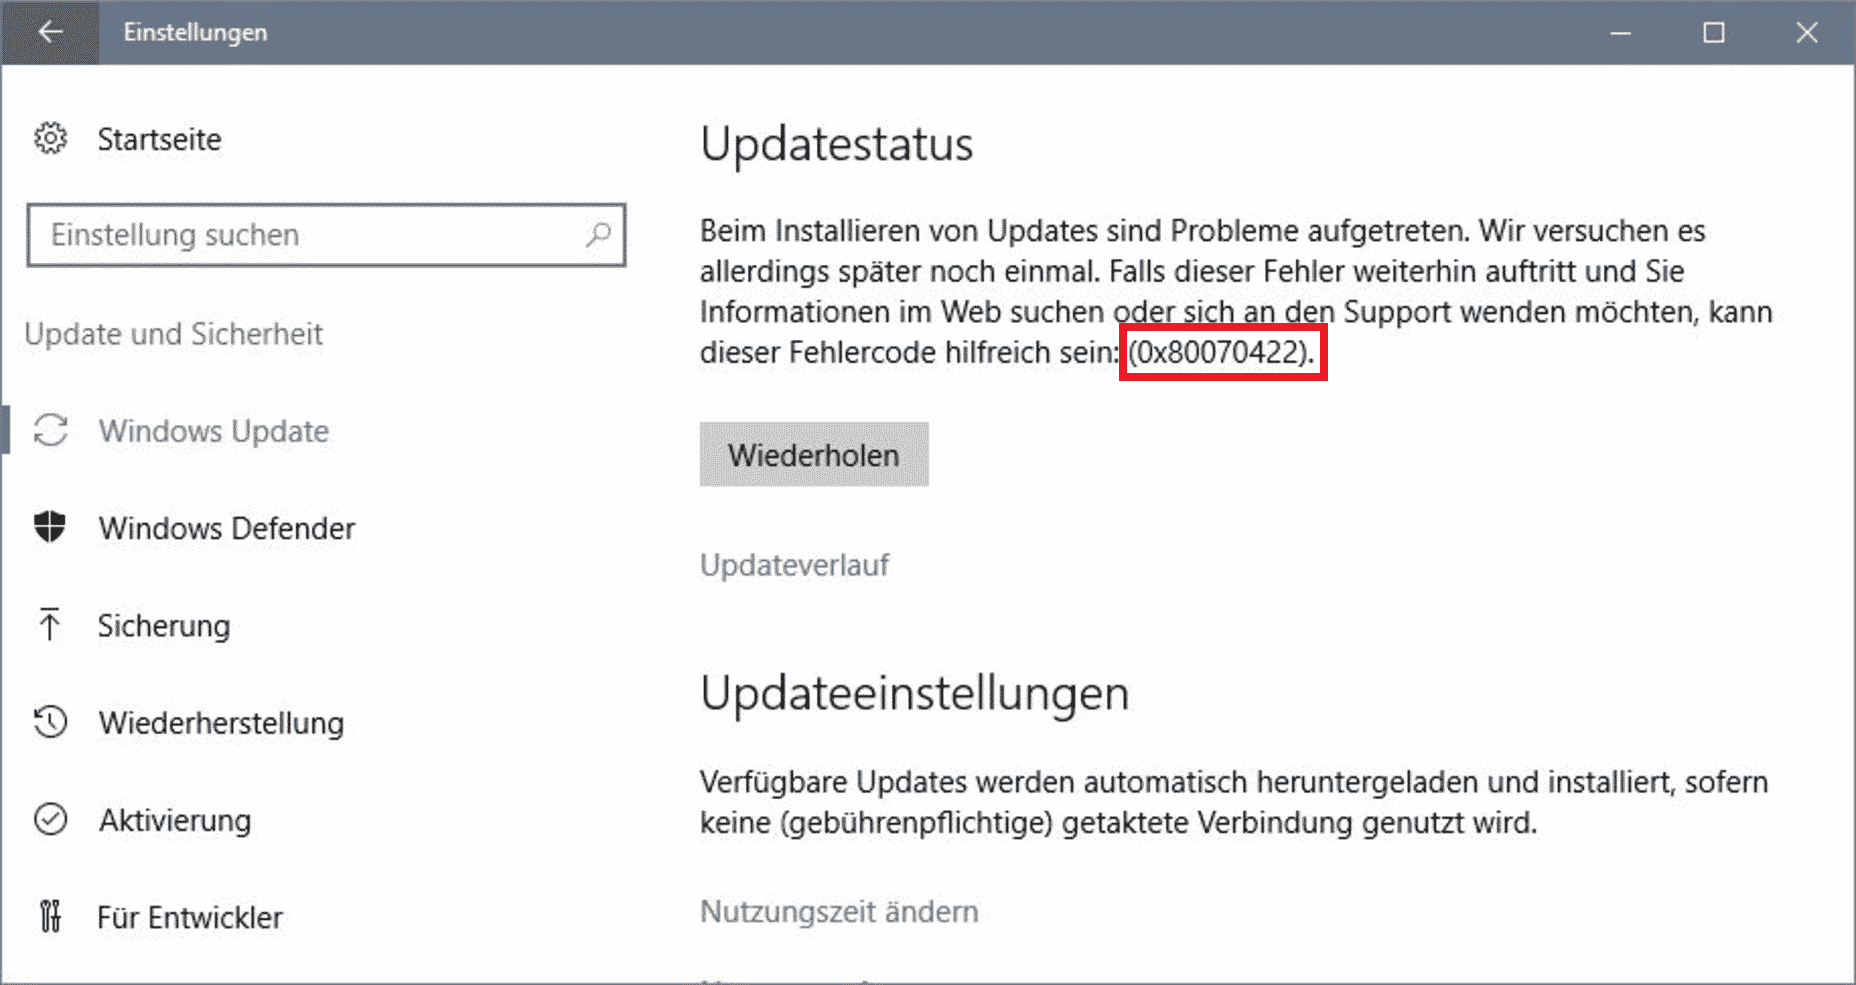 Fehlercode 0x80070070: Nicht genügend Speicherplatz auf der Festplatte.
Fehlercode 0x80070422: Windows Update-Dienst ist nicht aktiviert.